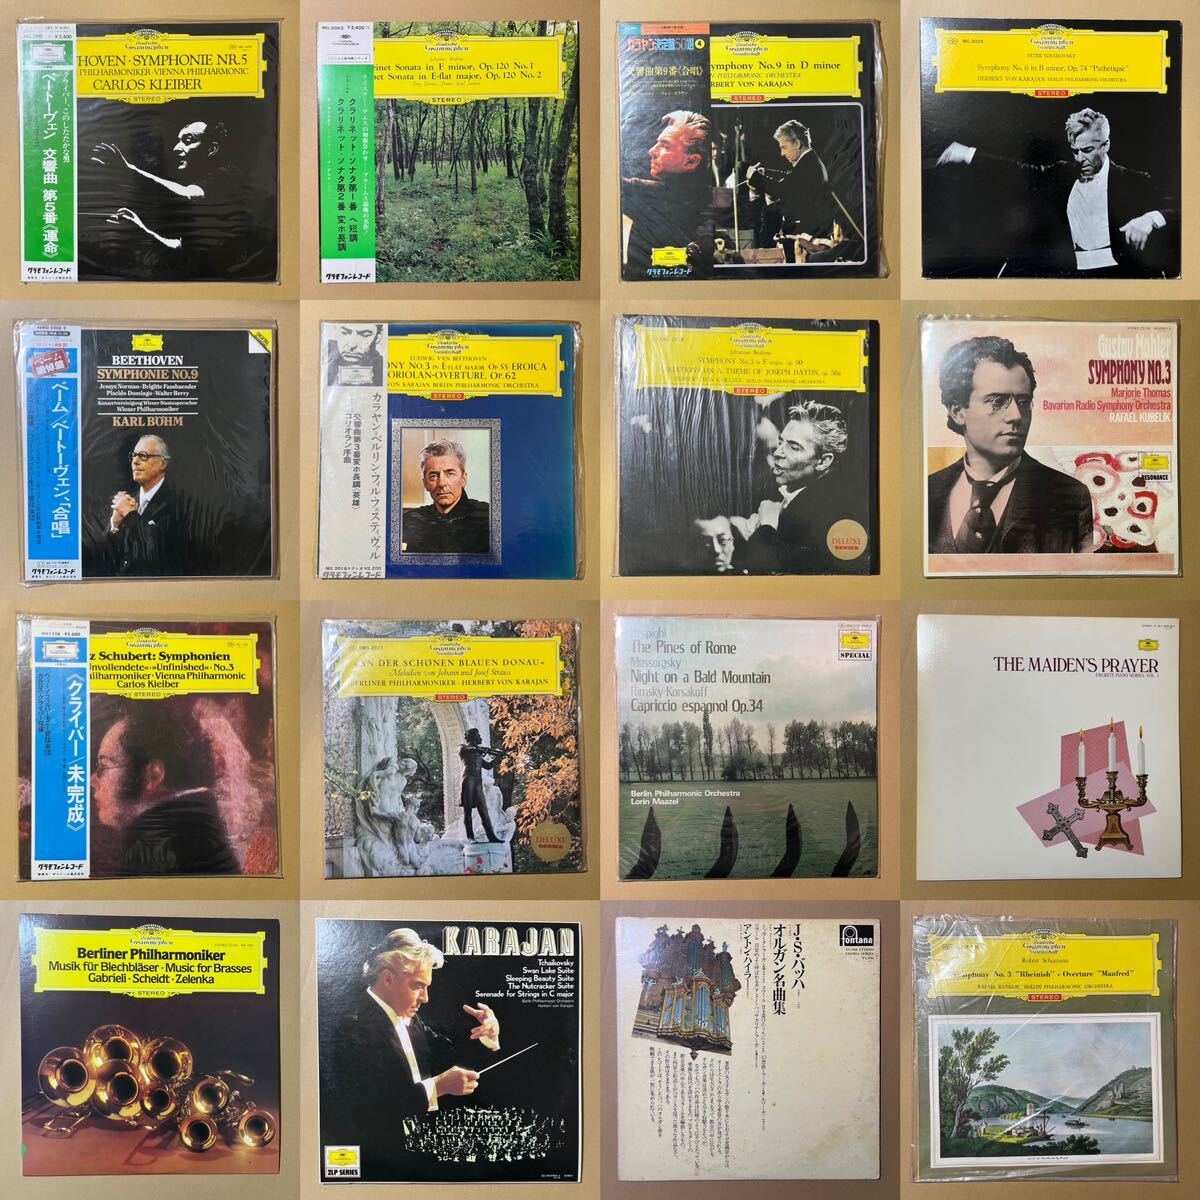 64 листов classic LP запись с поясом оби большое количество много комплект Classic super превосходящий запись и т.п. суммировать 1 иен старт kalayan маленький ... др. 7